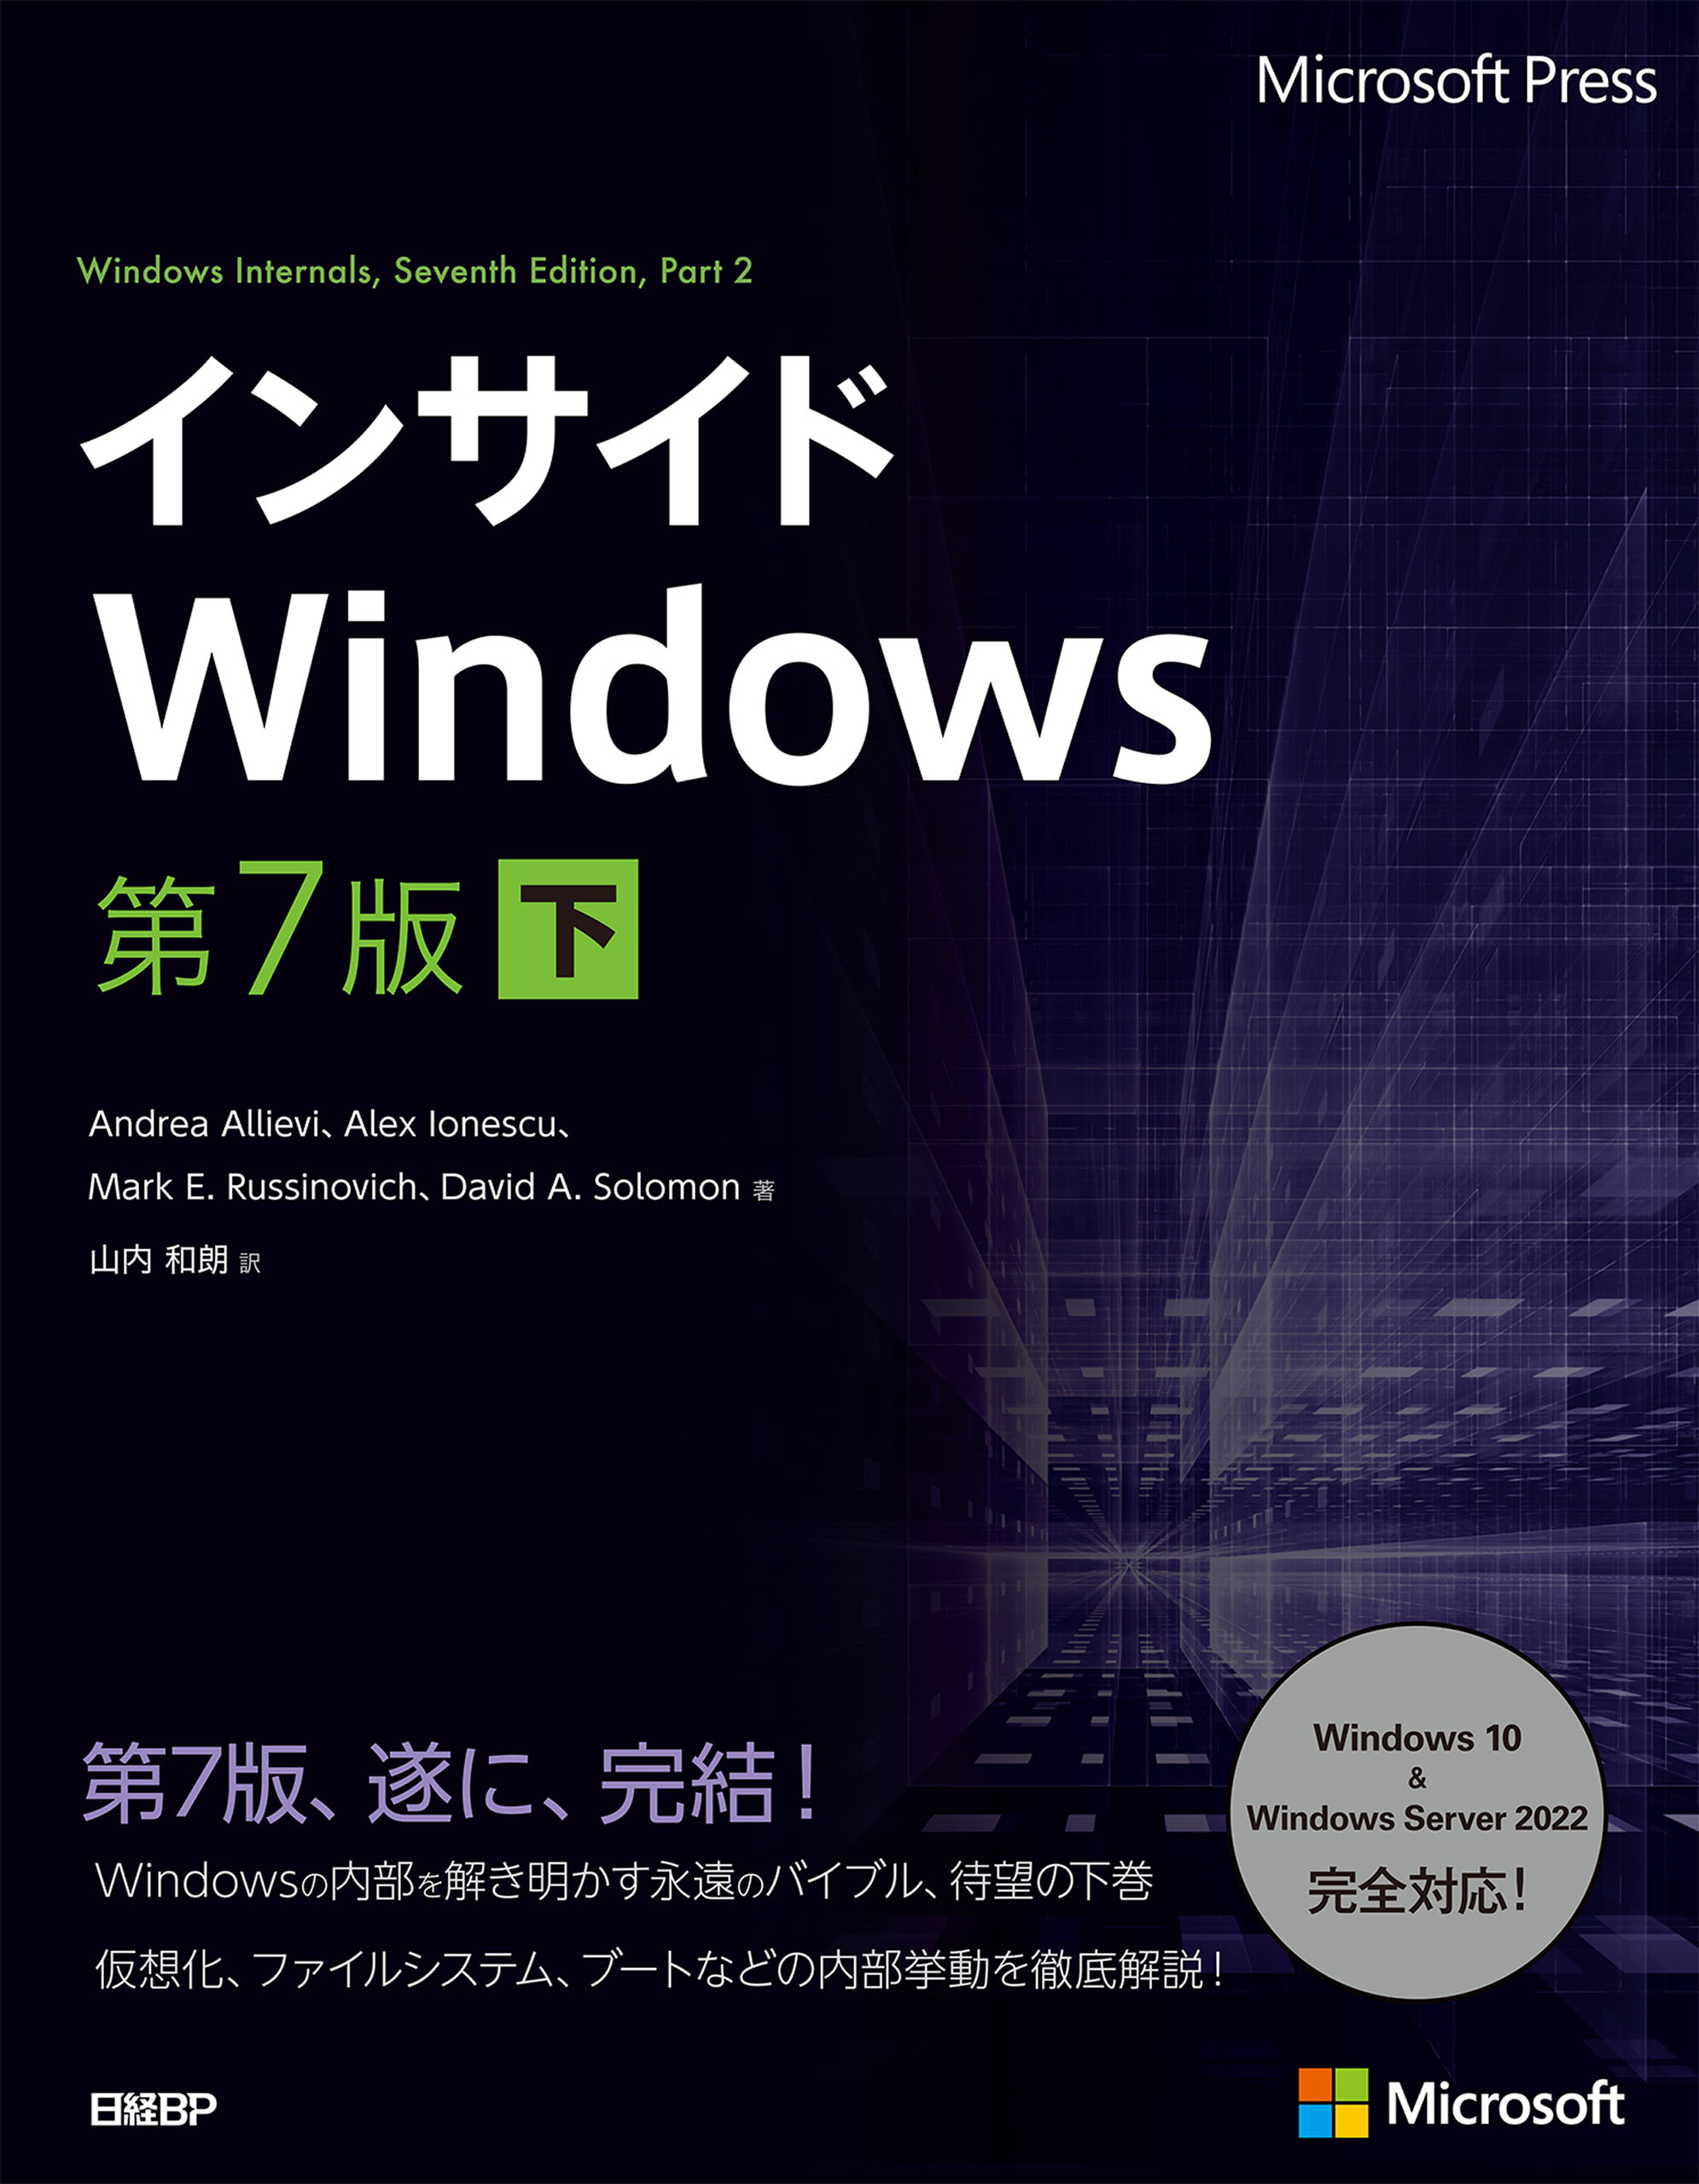 Windows Vistaを用いたコンピュータリテラシーと情報活用 MS-Of